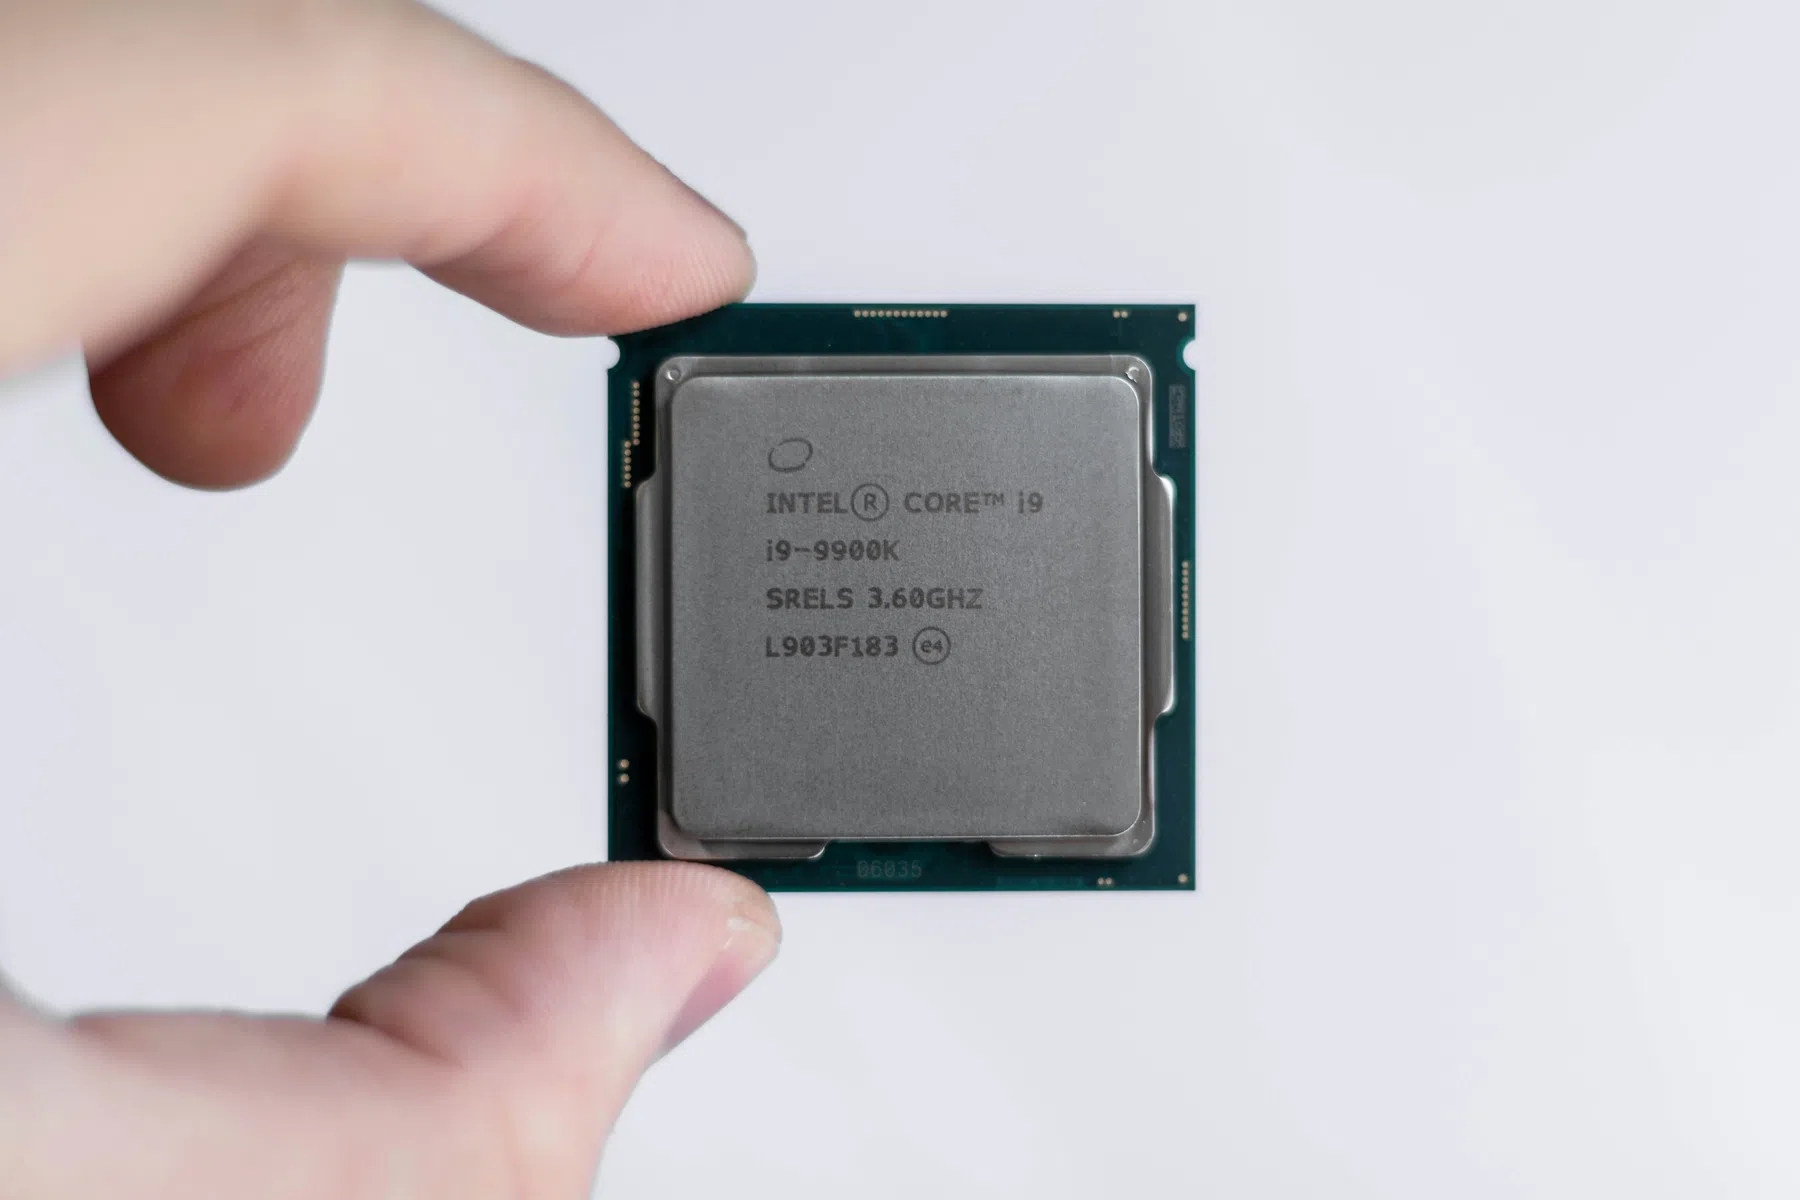 Intel verliest miljarden aan chips, maar wil break-even draaien met hulp van ASML